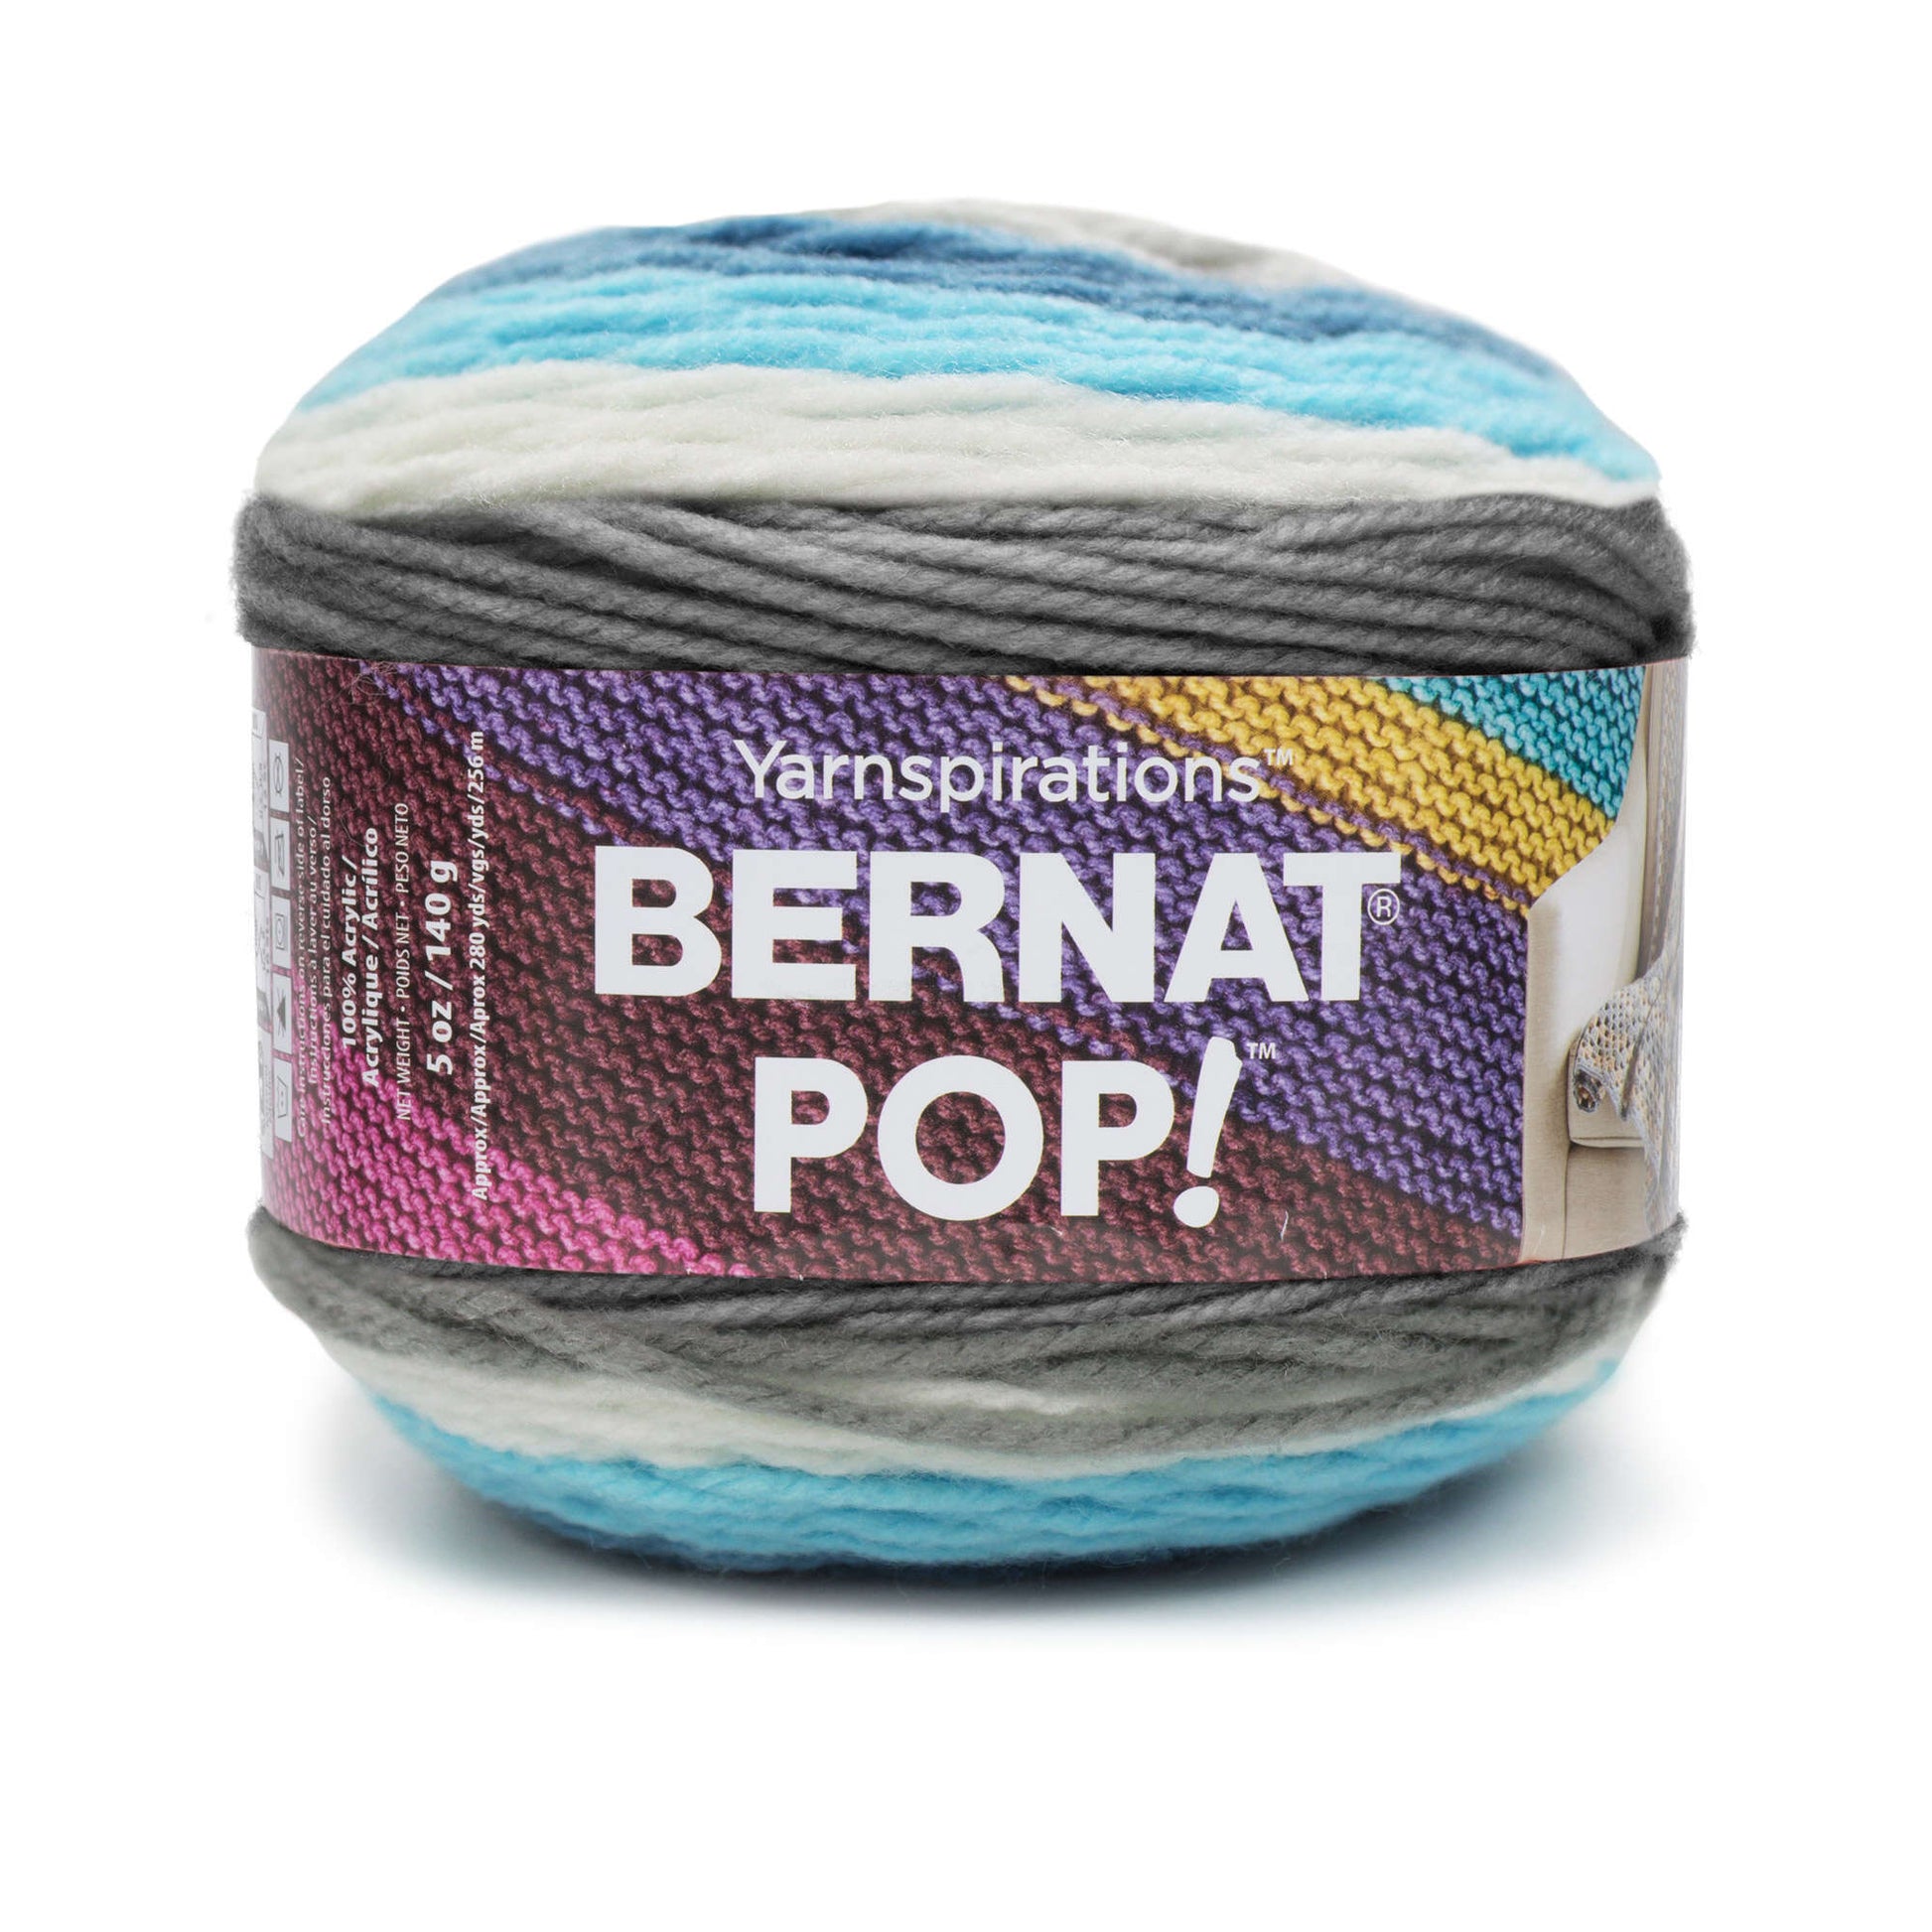 Bernat Pop! Yarn - Clearance Shades